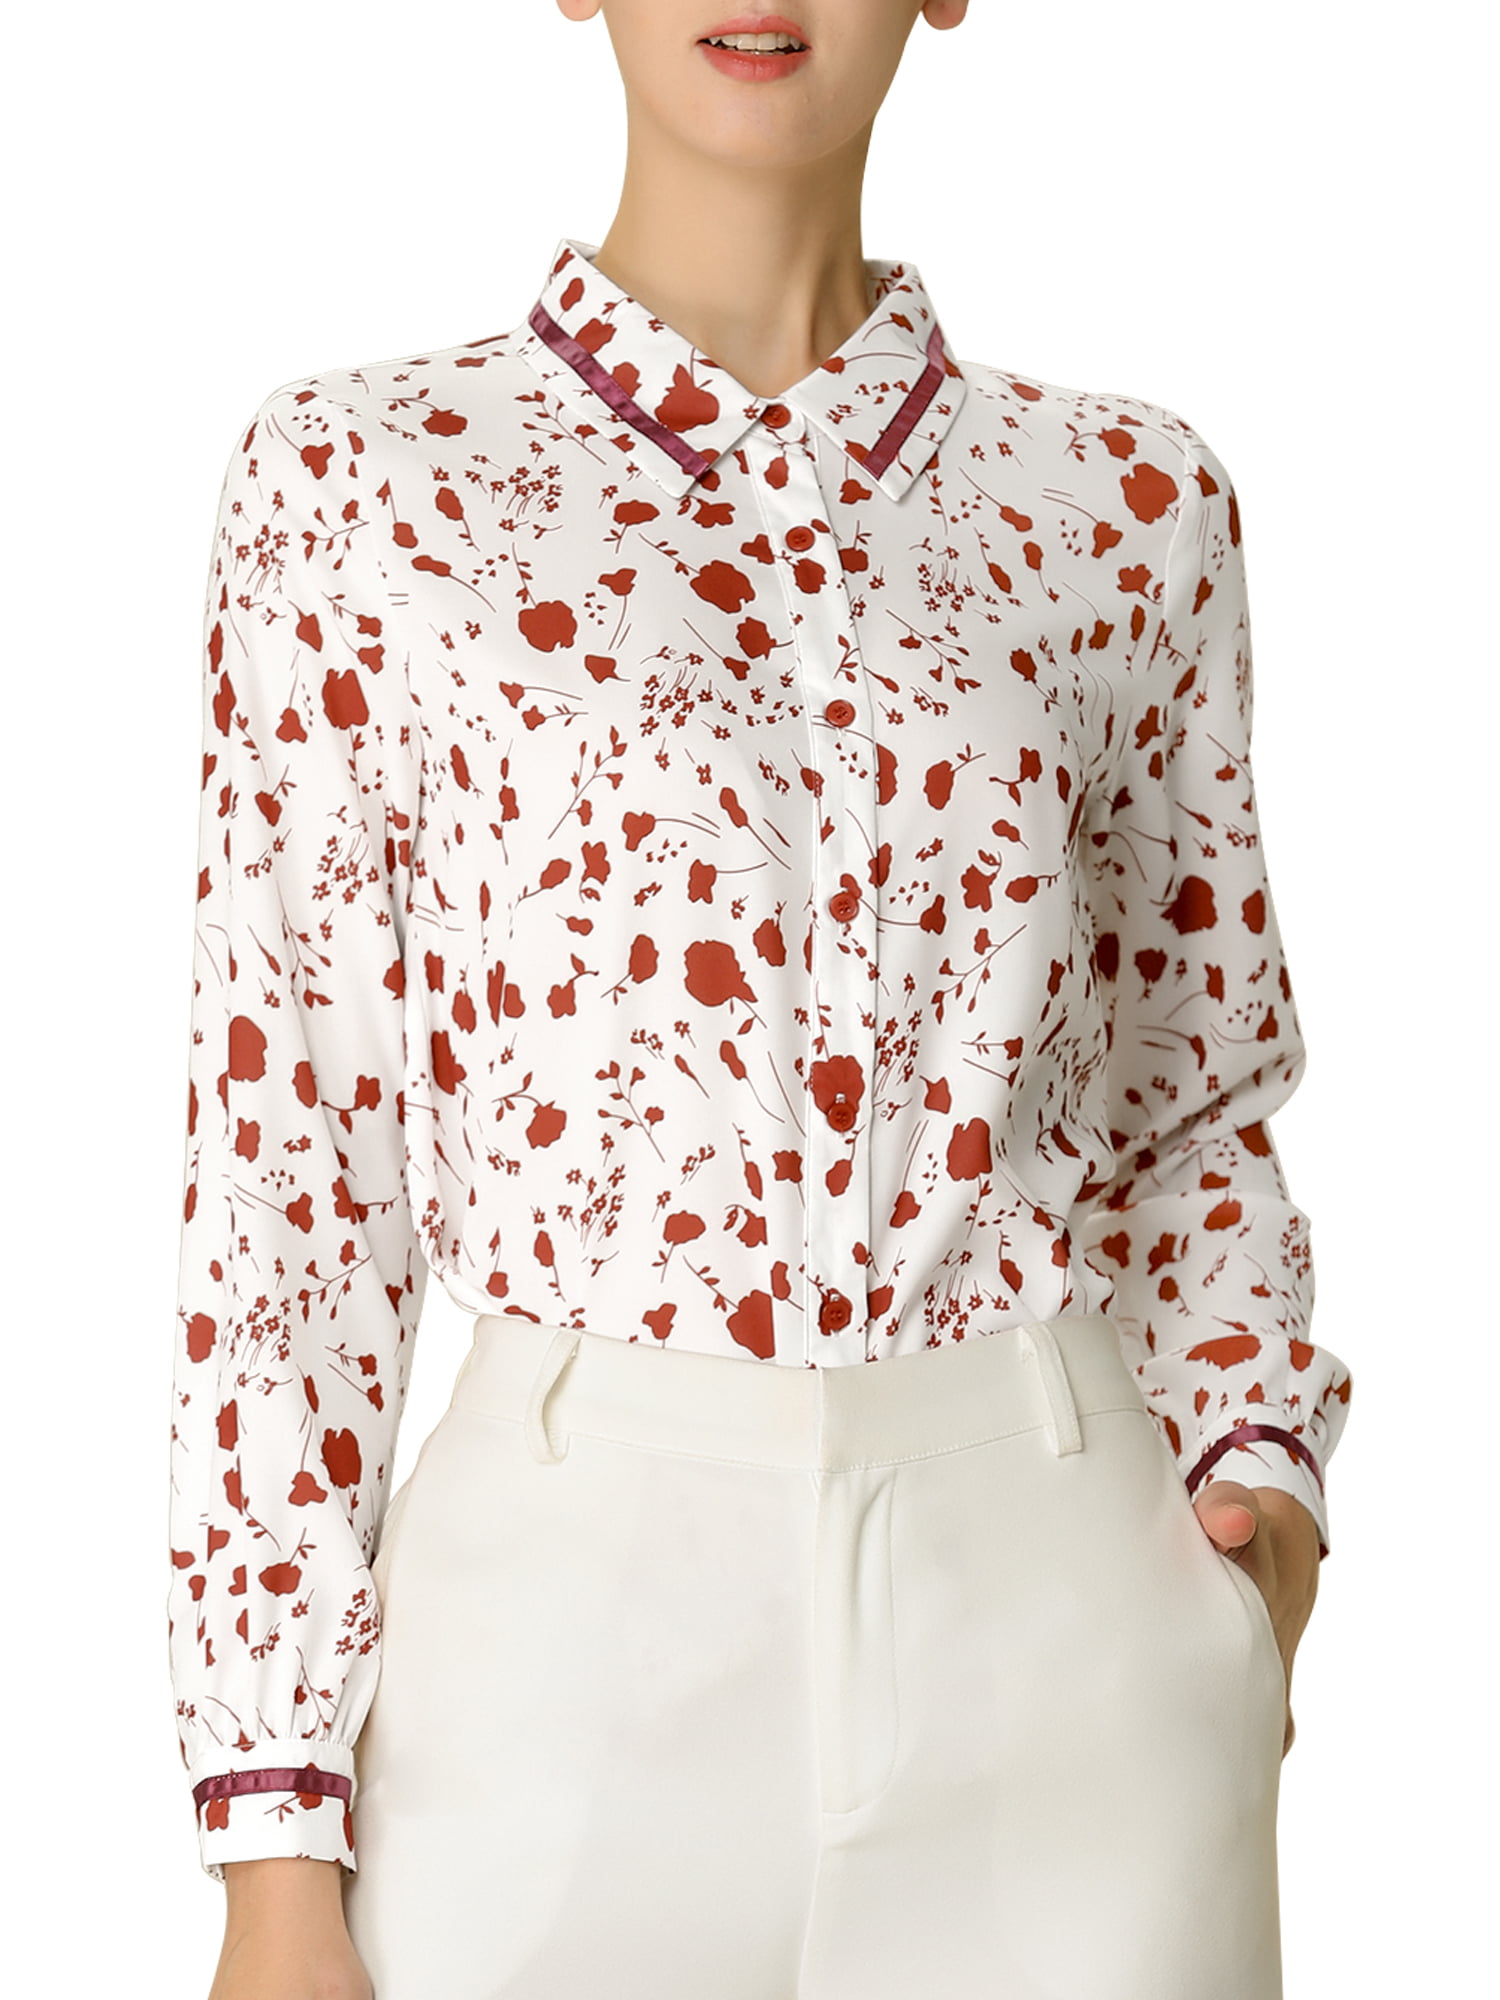 Allegra K Allegra K Women S Long Sleeve Shirt Casual Button Up Floral Print Blouse Tops